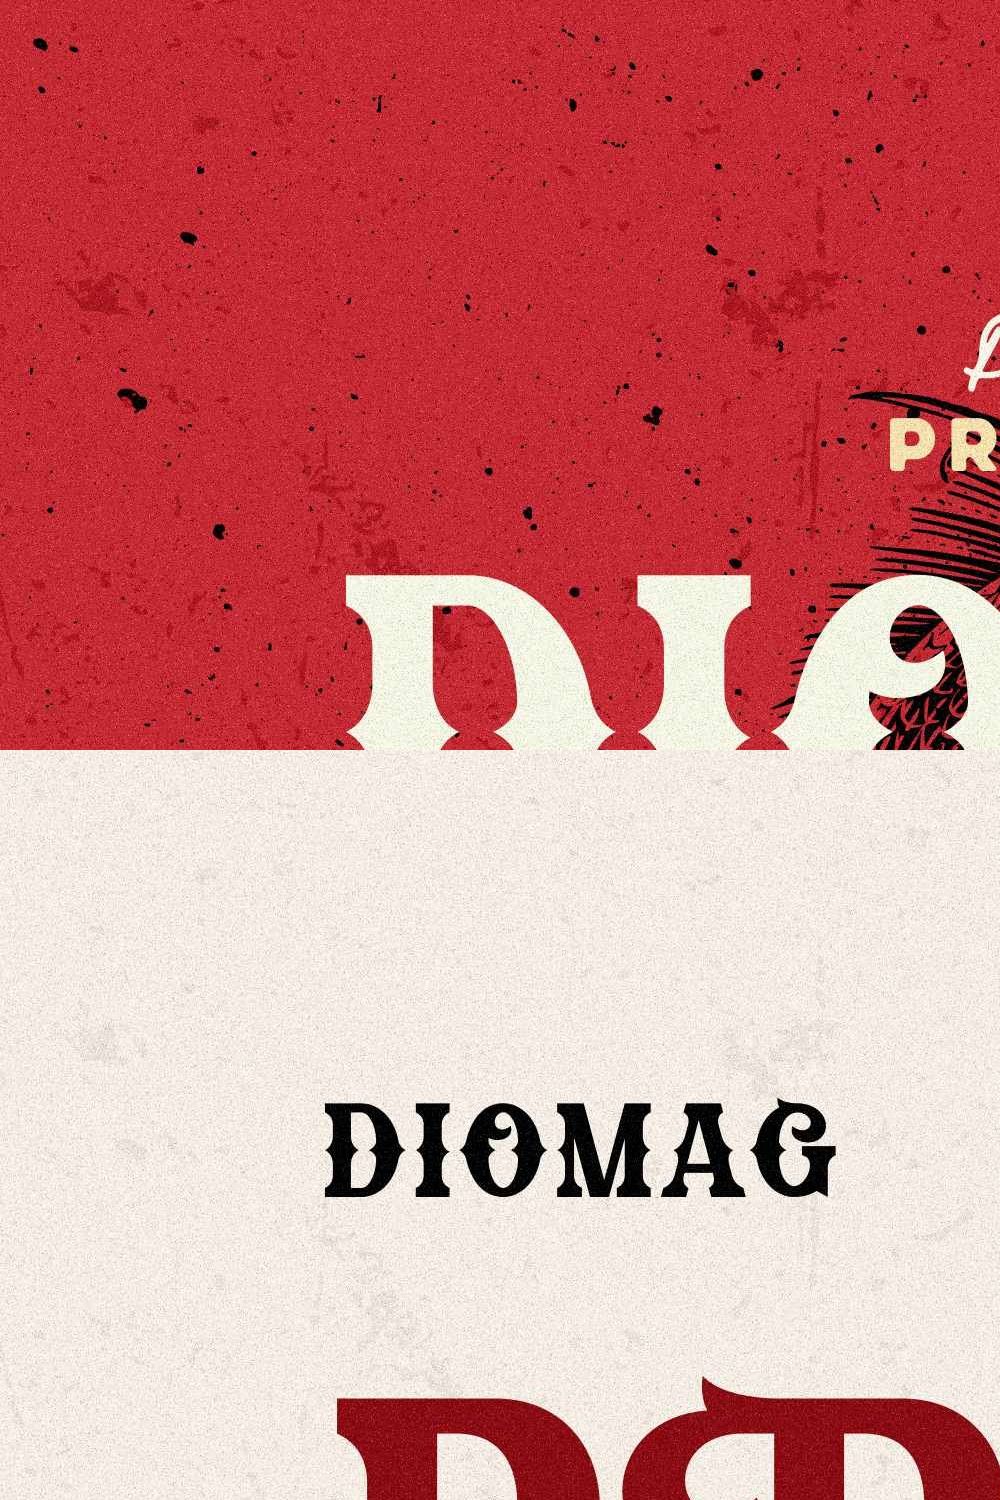 Diomag - Vintage Display Font pinterest preview image.